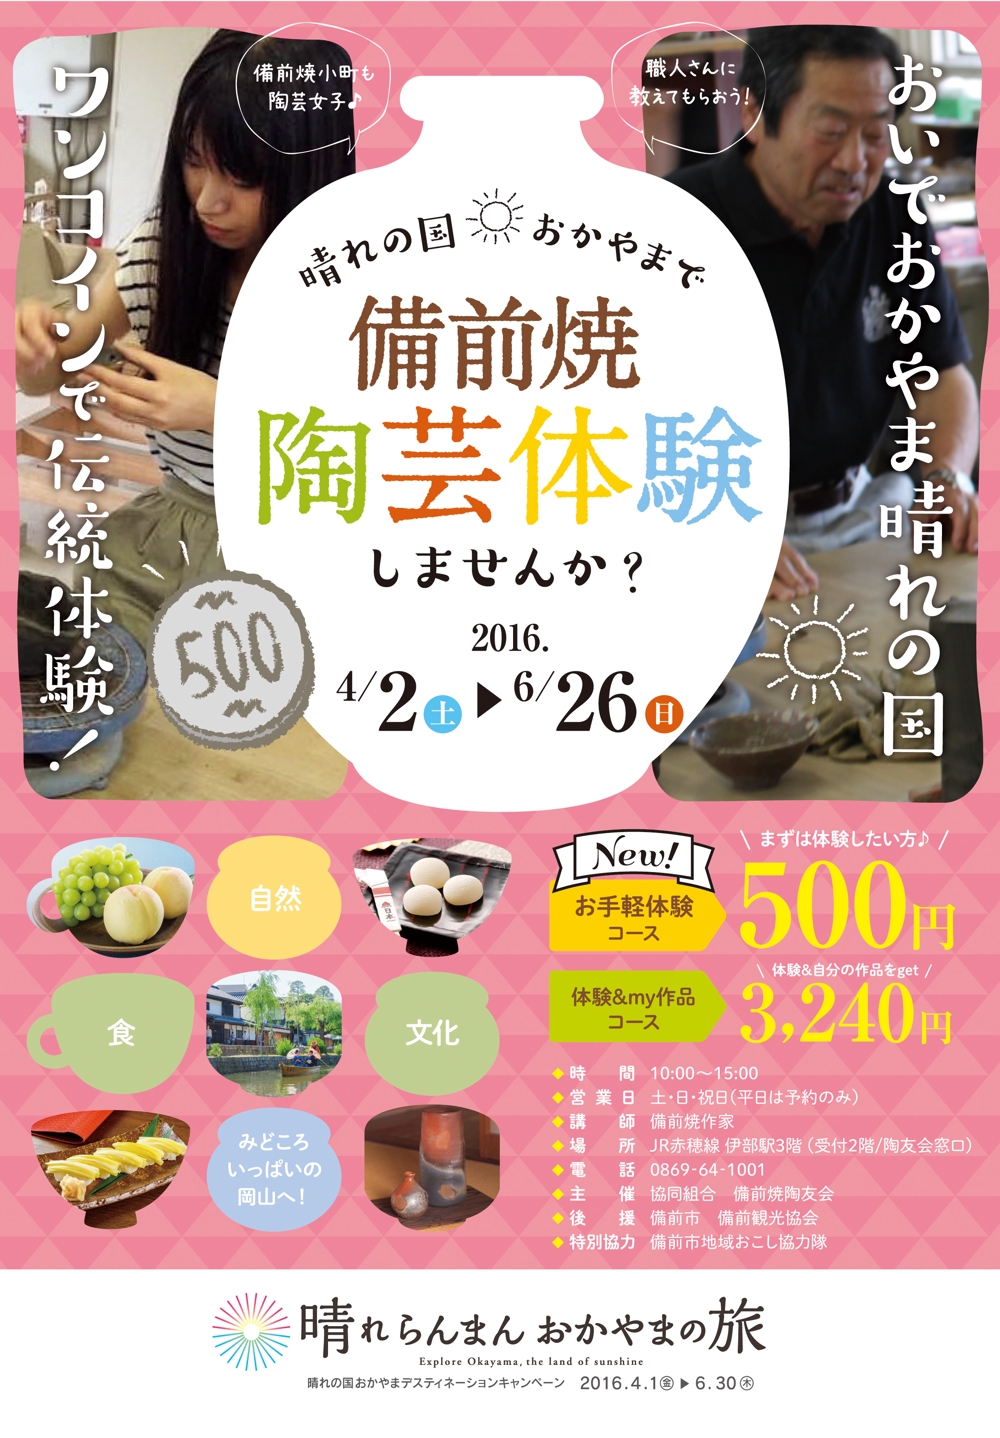 【急募】岡山観光キャンペーンの「陶芸体験」チラシ作成